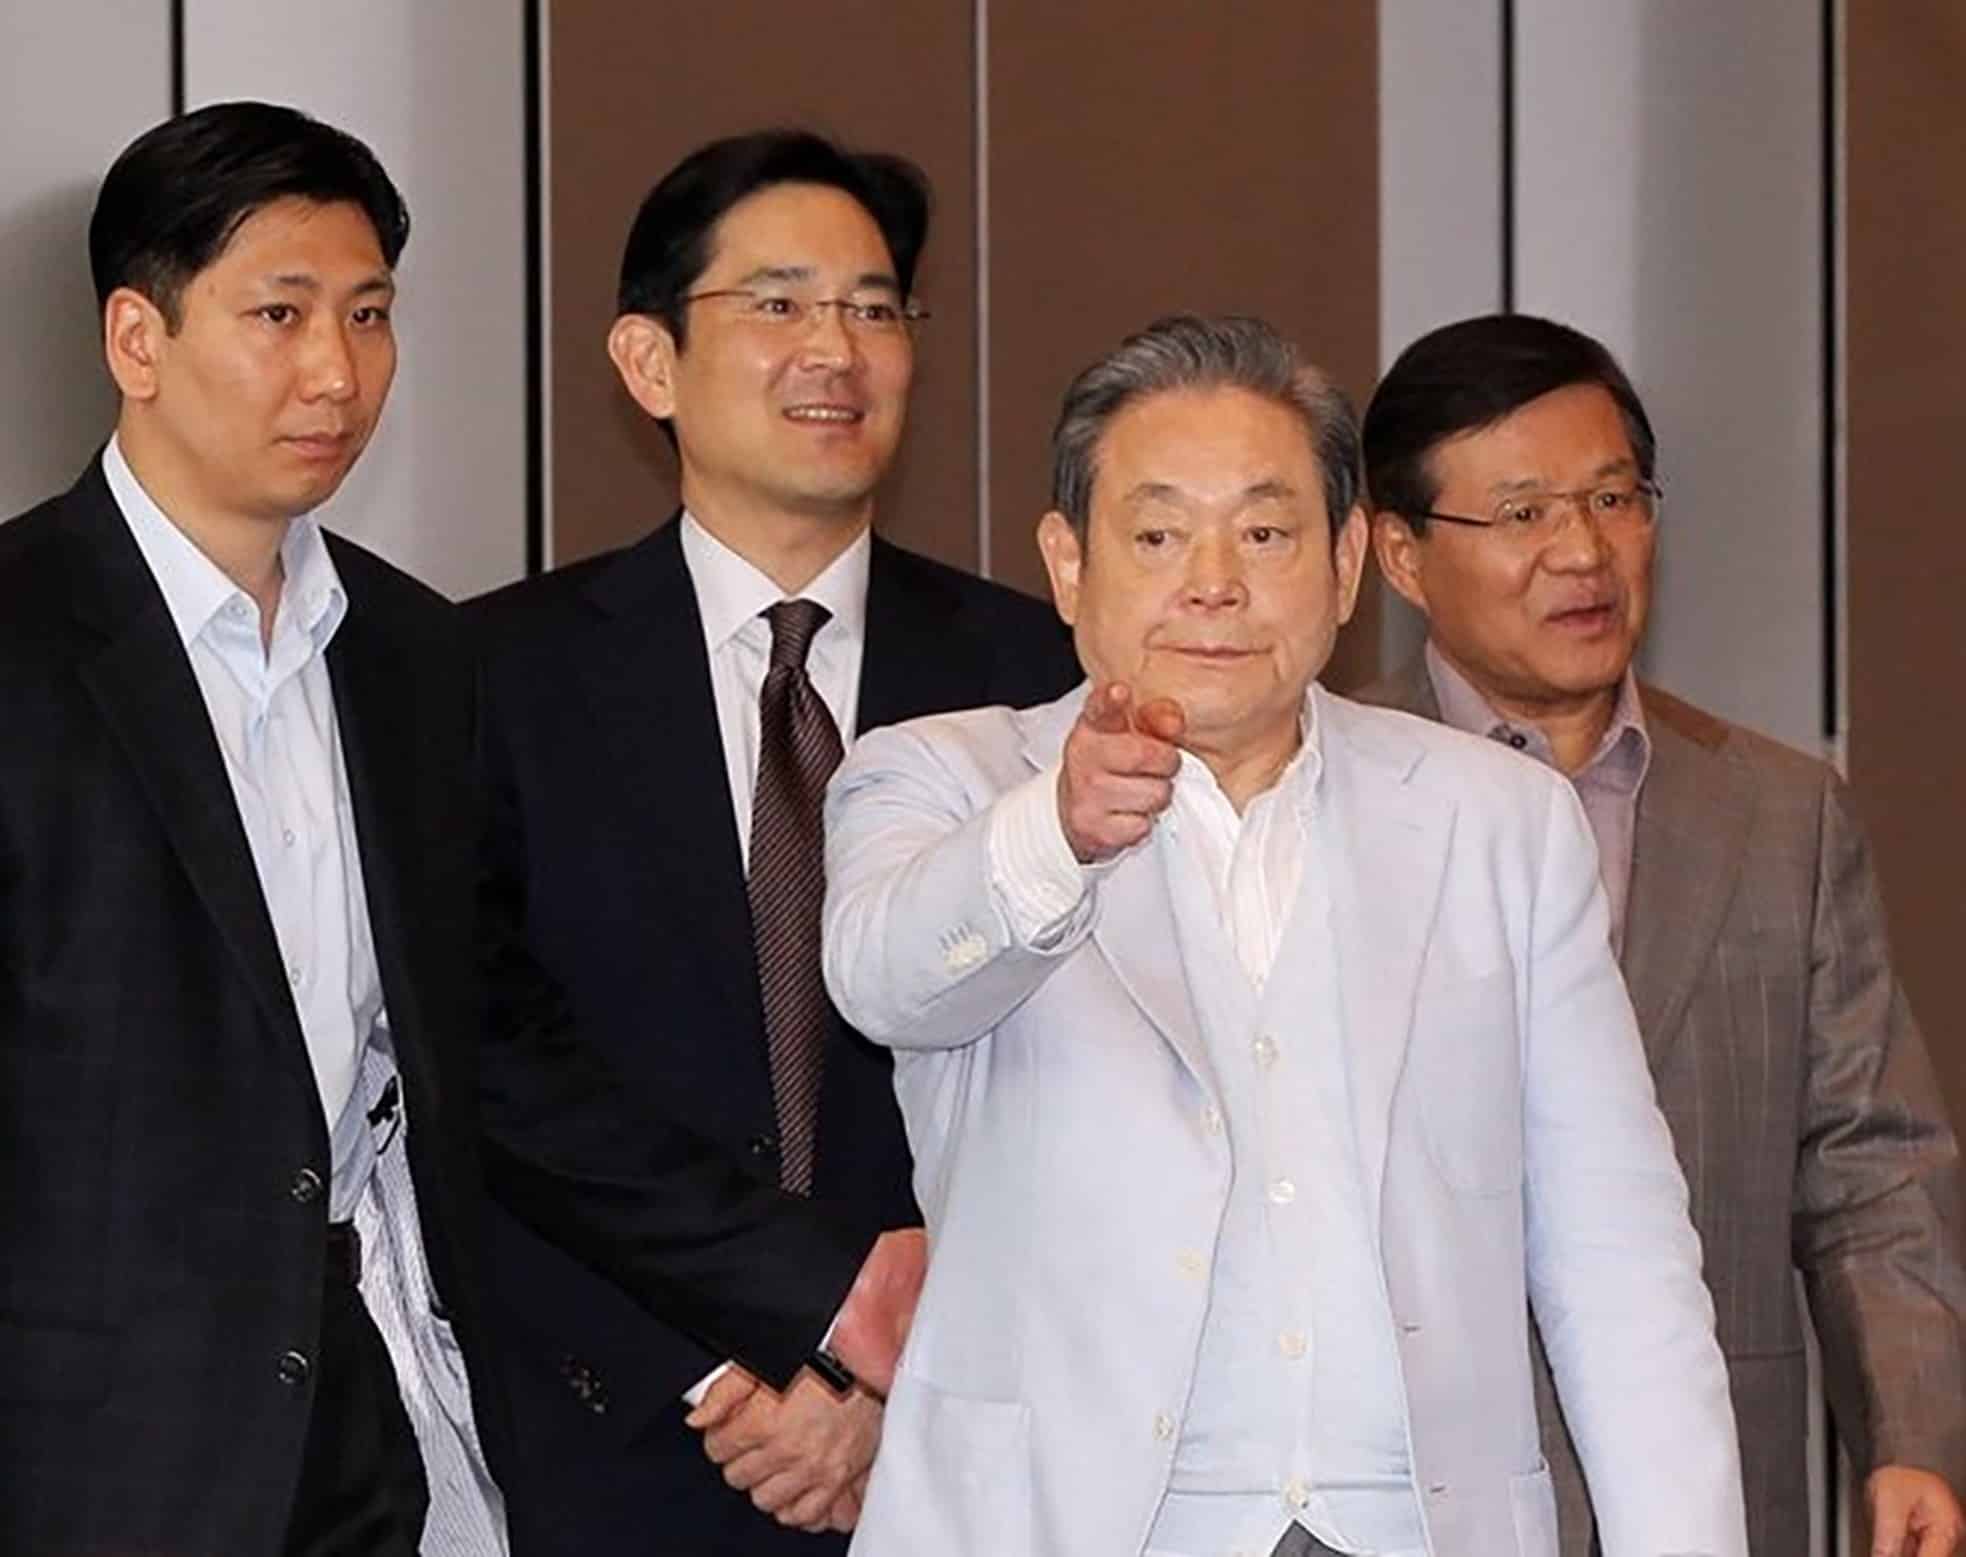 Chủ tịch Samsung Electronics Lee Kun-hee (thứ 3 từ trái sang) và con trai cùng các nhân viên của công ty bước tại tòa nhà văn phòng Samsung Electronics ở Seoul năm 2011. Ảnh: Yonhap